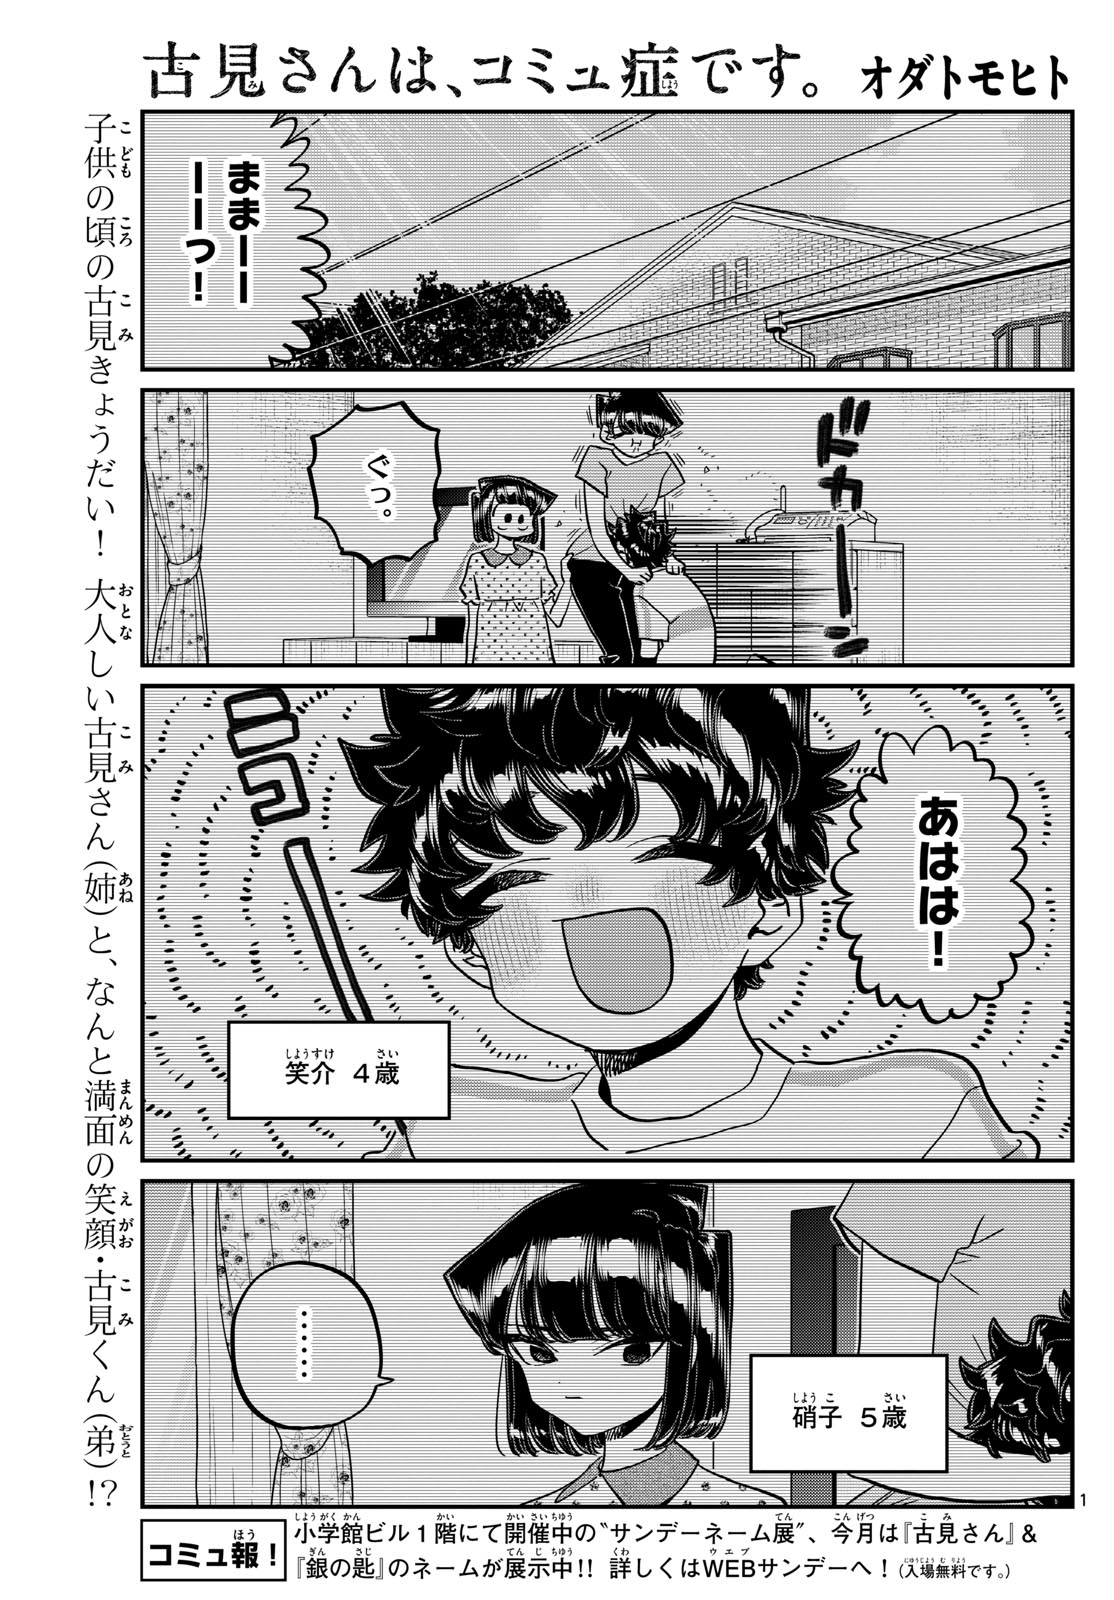 Komi-san wa Komyushou Desu - Chapter 460 - Page 1